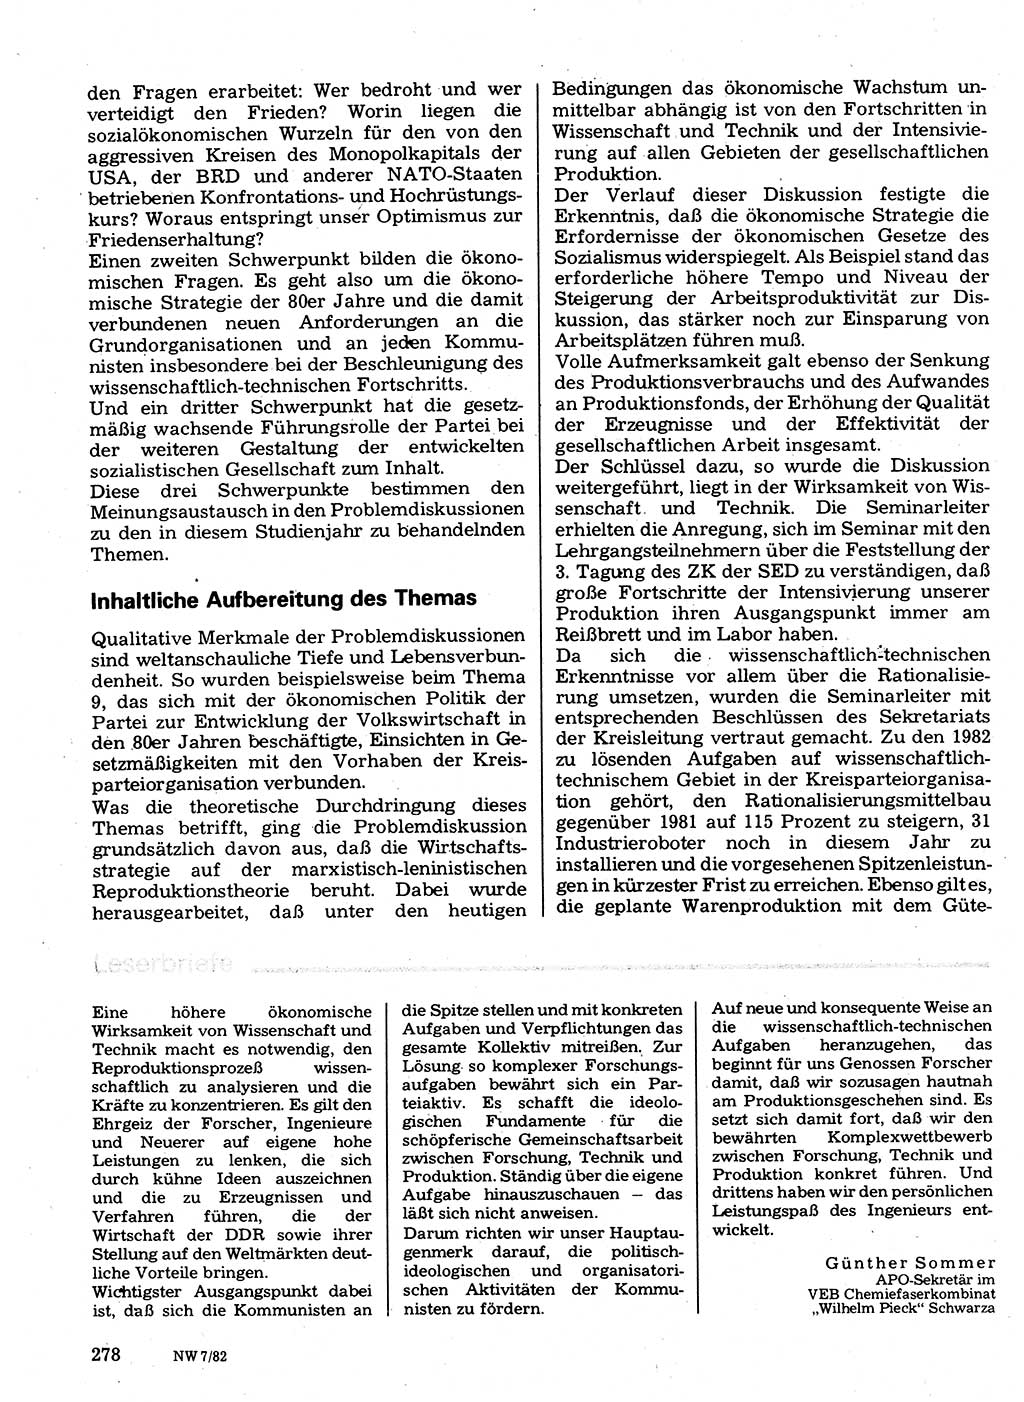 Neuer Weg (NW), Organ des Zentralkomitees (ZK) der SED (Sozialistische Einheitspartei Deutschlands) für Fragen des Parteilebens, 37. Jahrgang [Deutsche Demokratische Republik (DDR)] 1982, Seite 278 (NW ZK SED DDR 1982, S. 278)